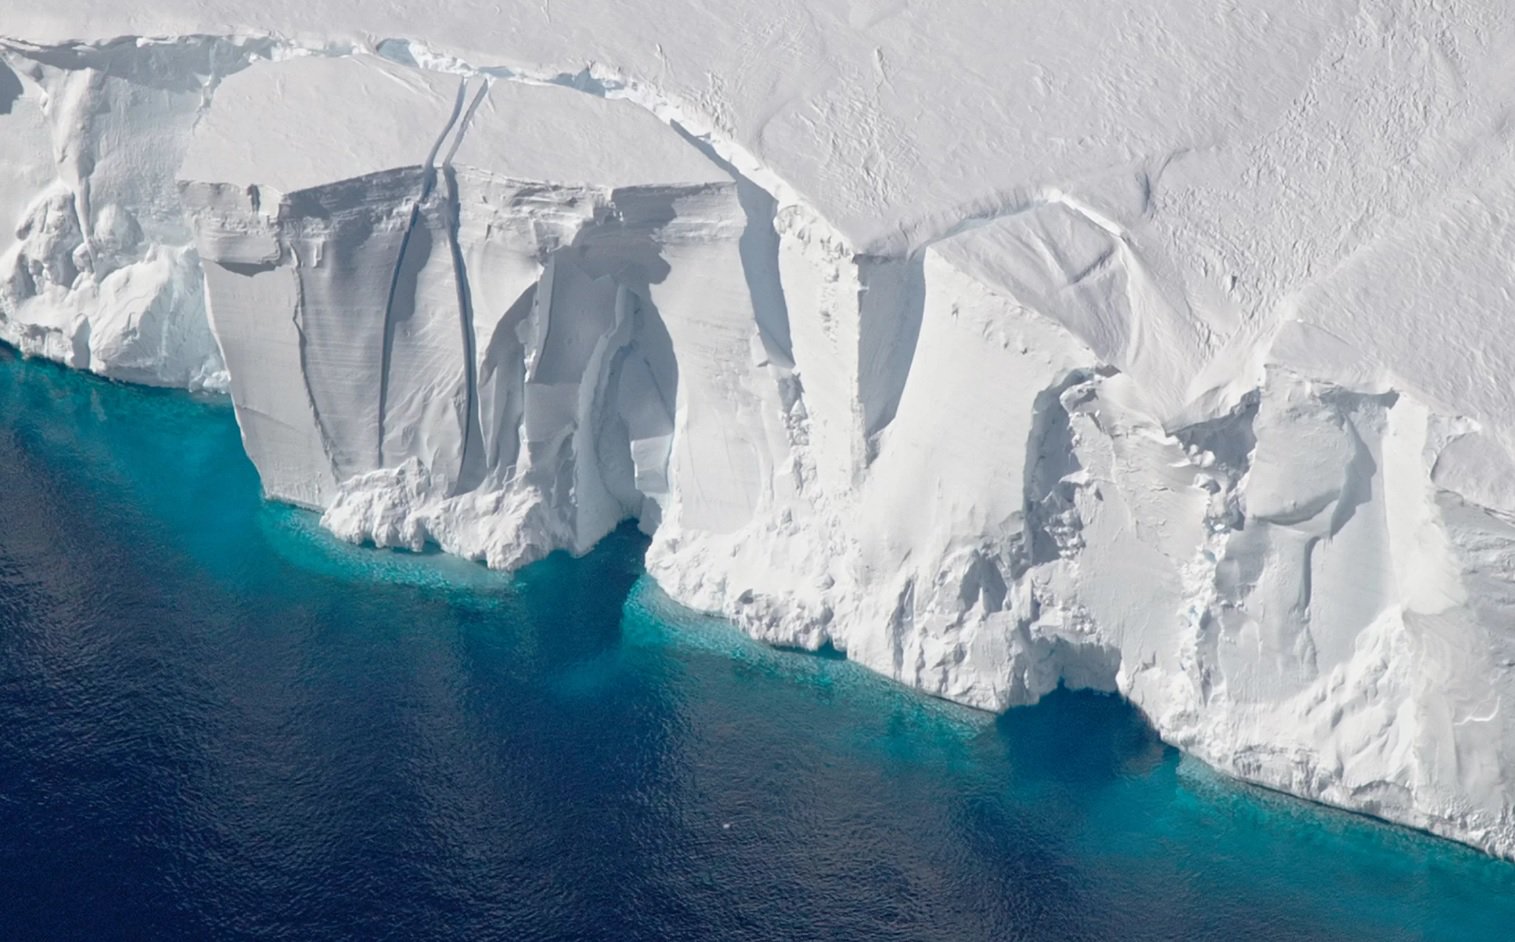 احتياطيات من الجليد في القارة القطبية الجنوبية على مدى 25 عاما قد انخفض بشكل ملحوظ